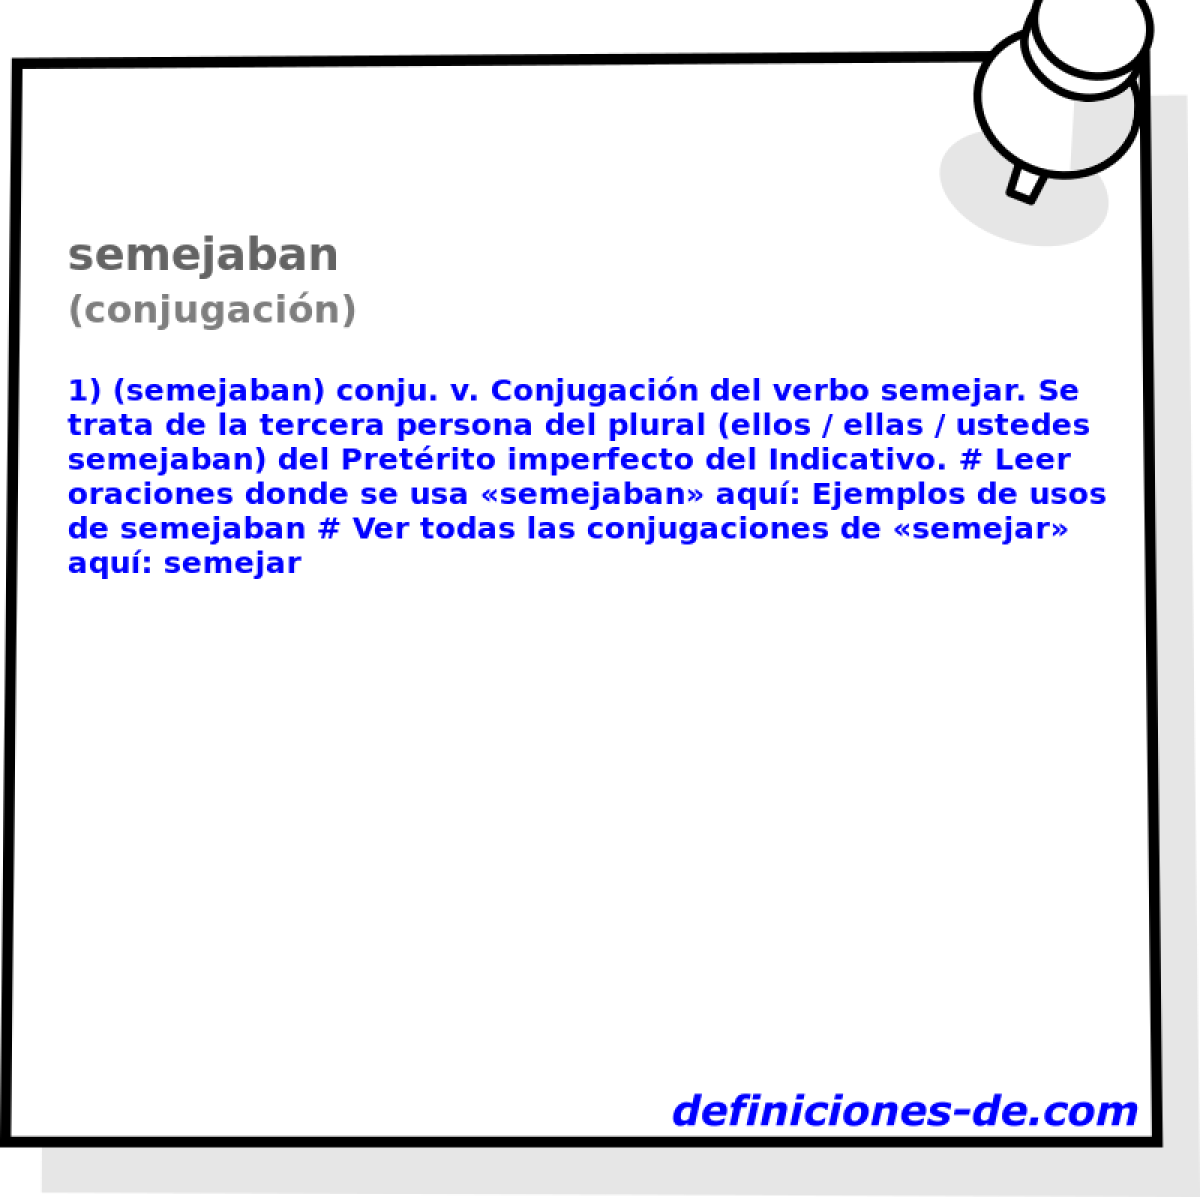 semejaban (conjugacin)